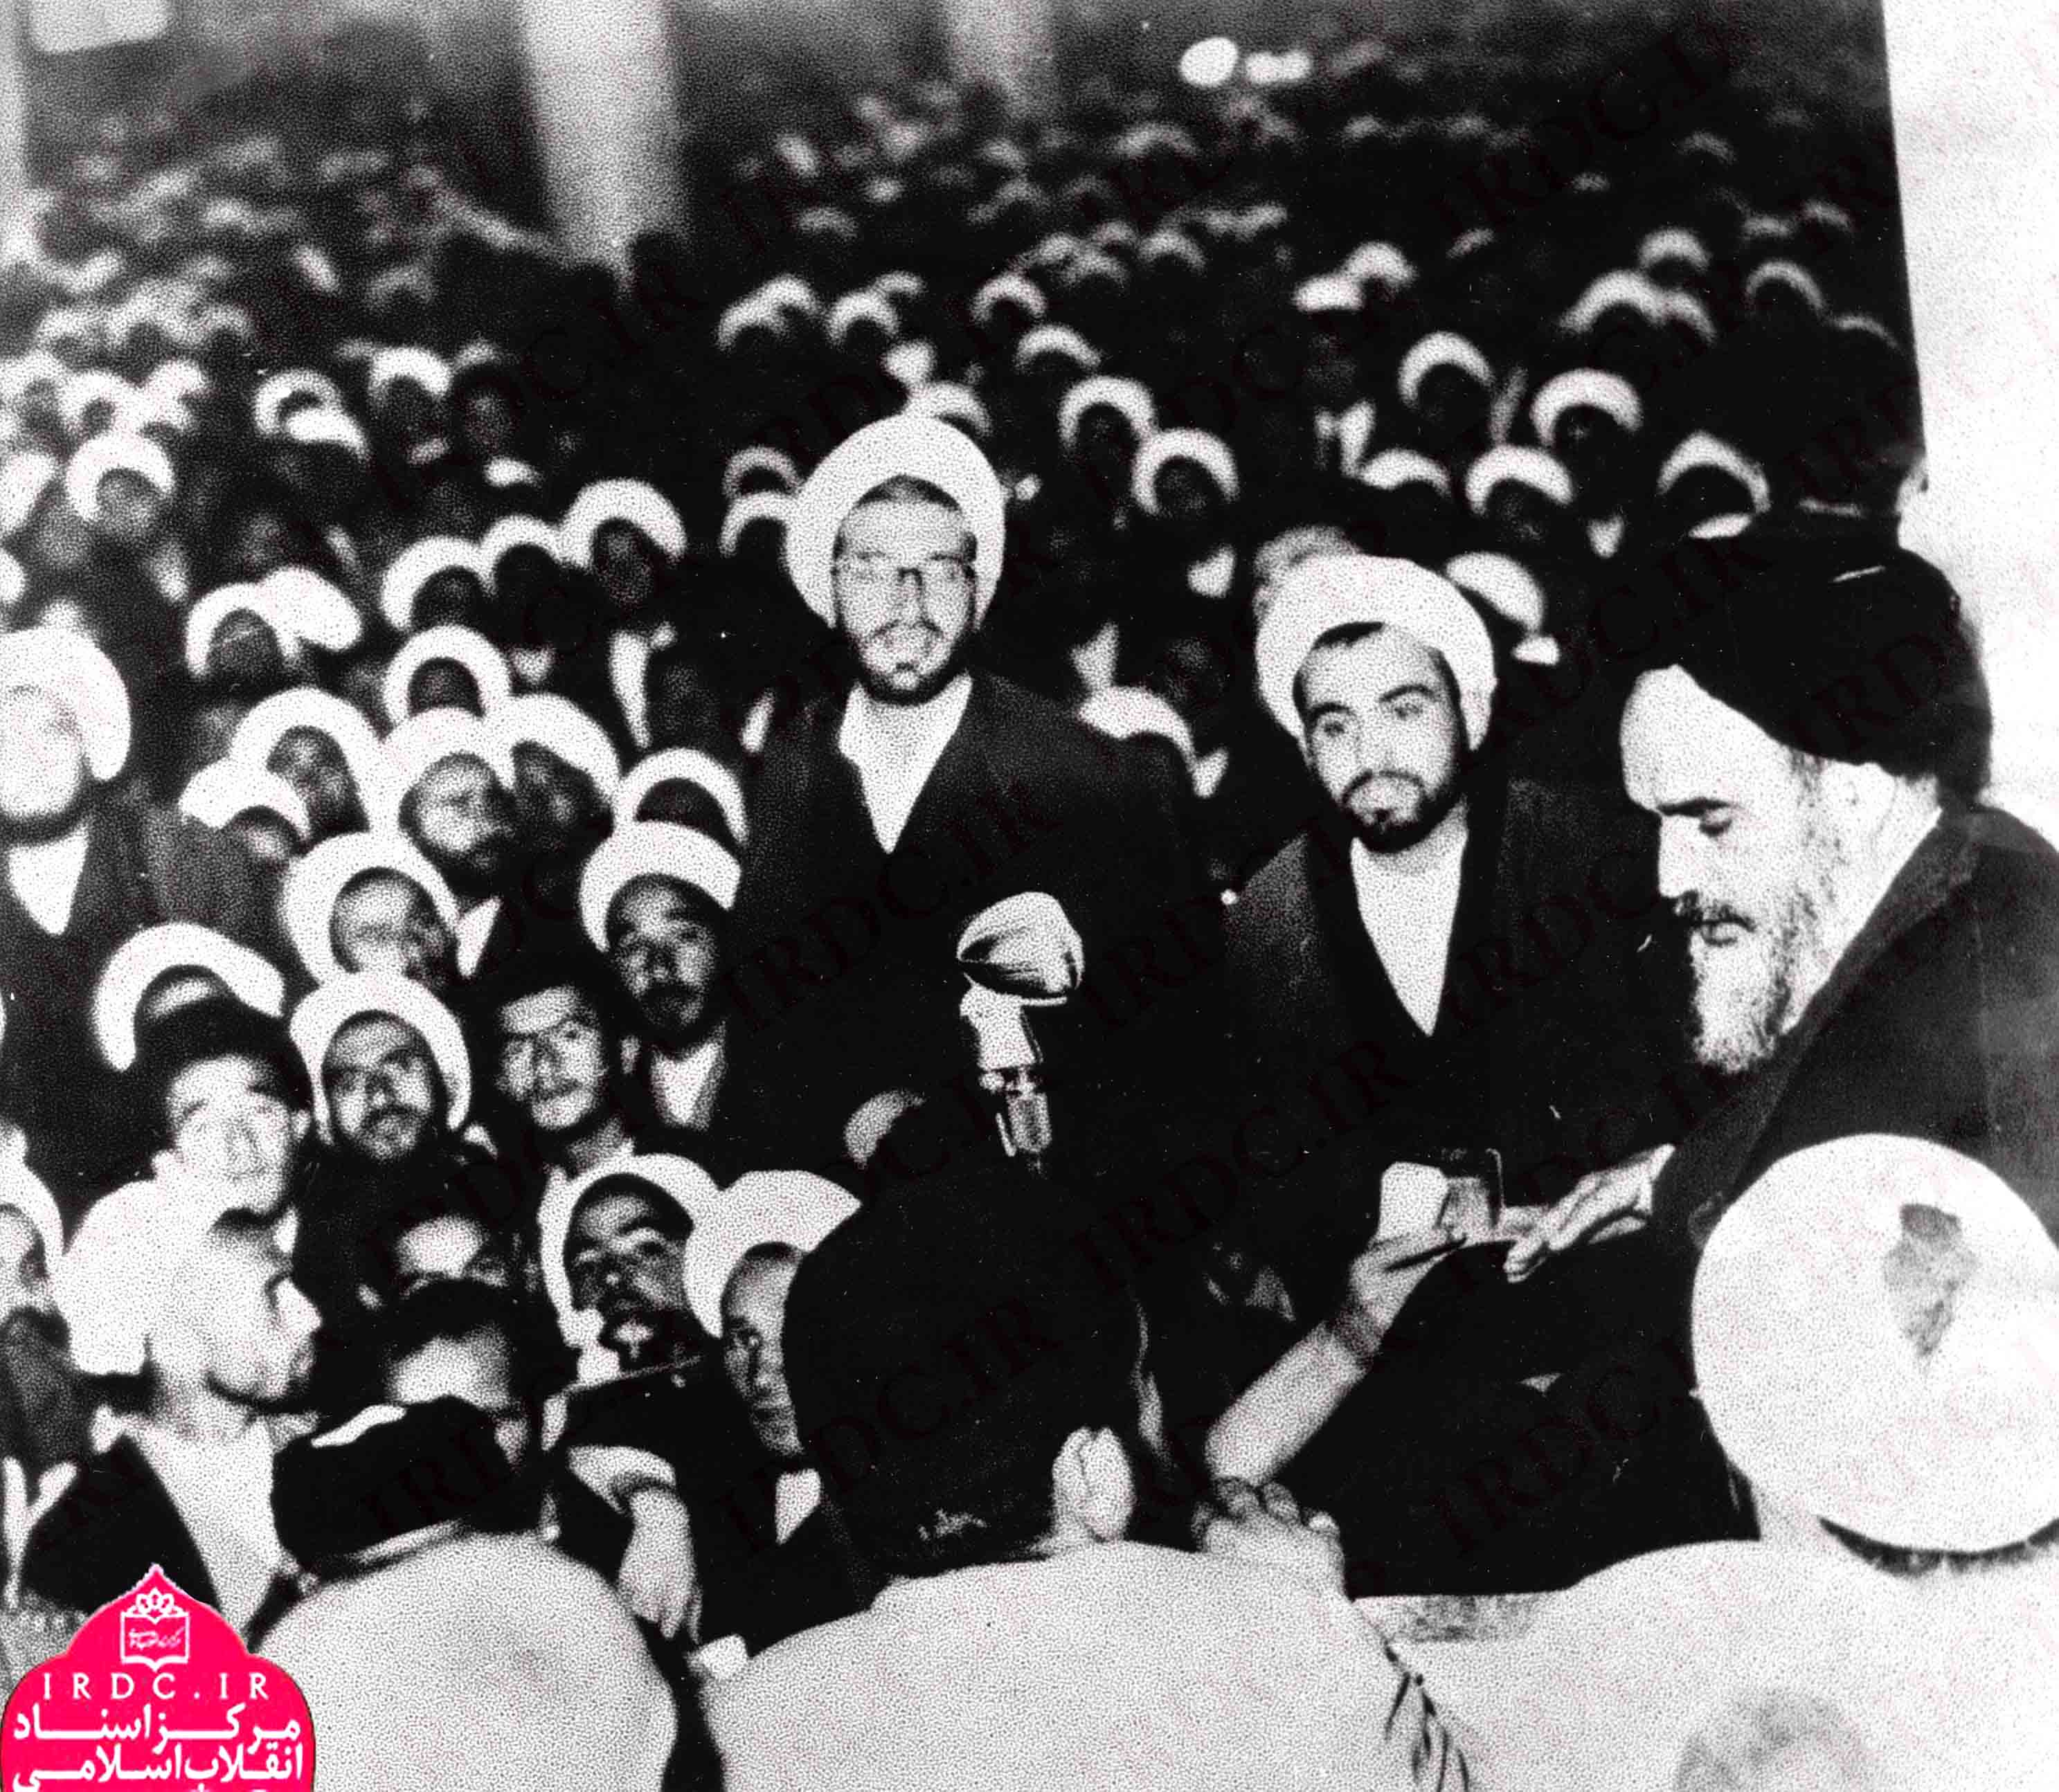 تصاویر دیده نشده از سخنرانی تاریخی امام خمینی علیه کاپیتولاسیون